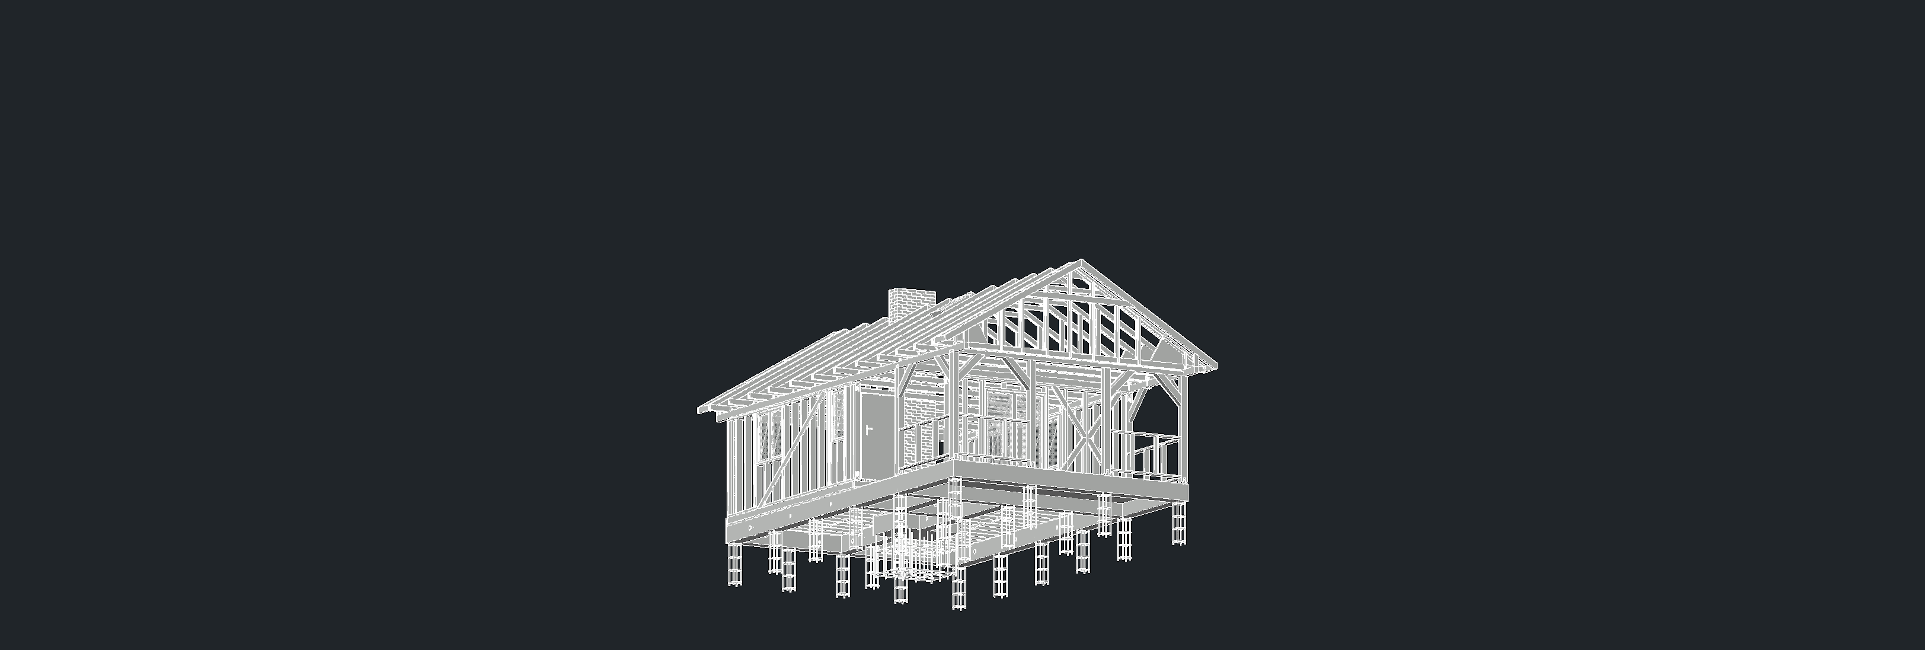 Drewniany dom szkieletowy 